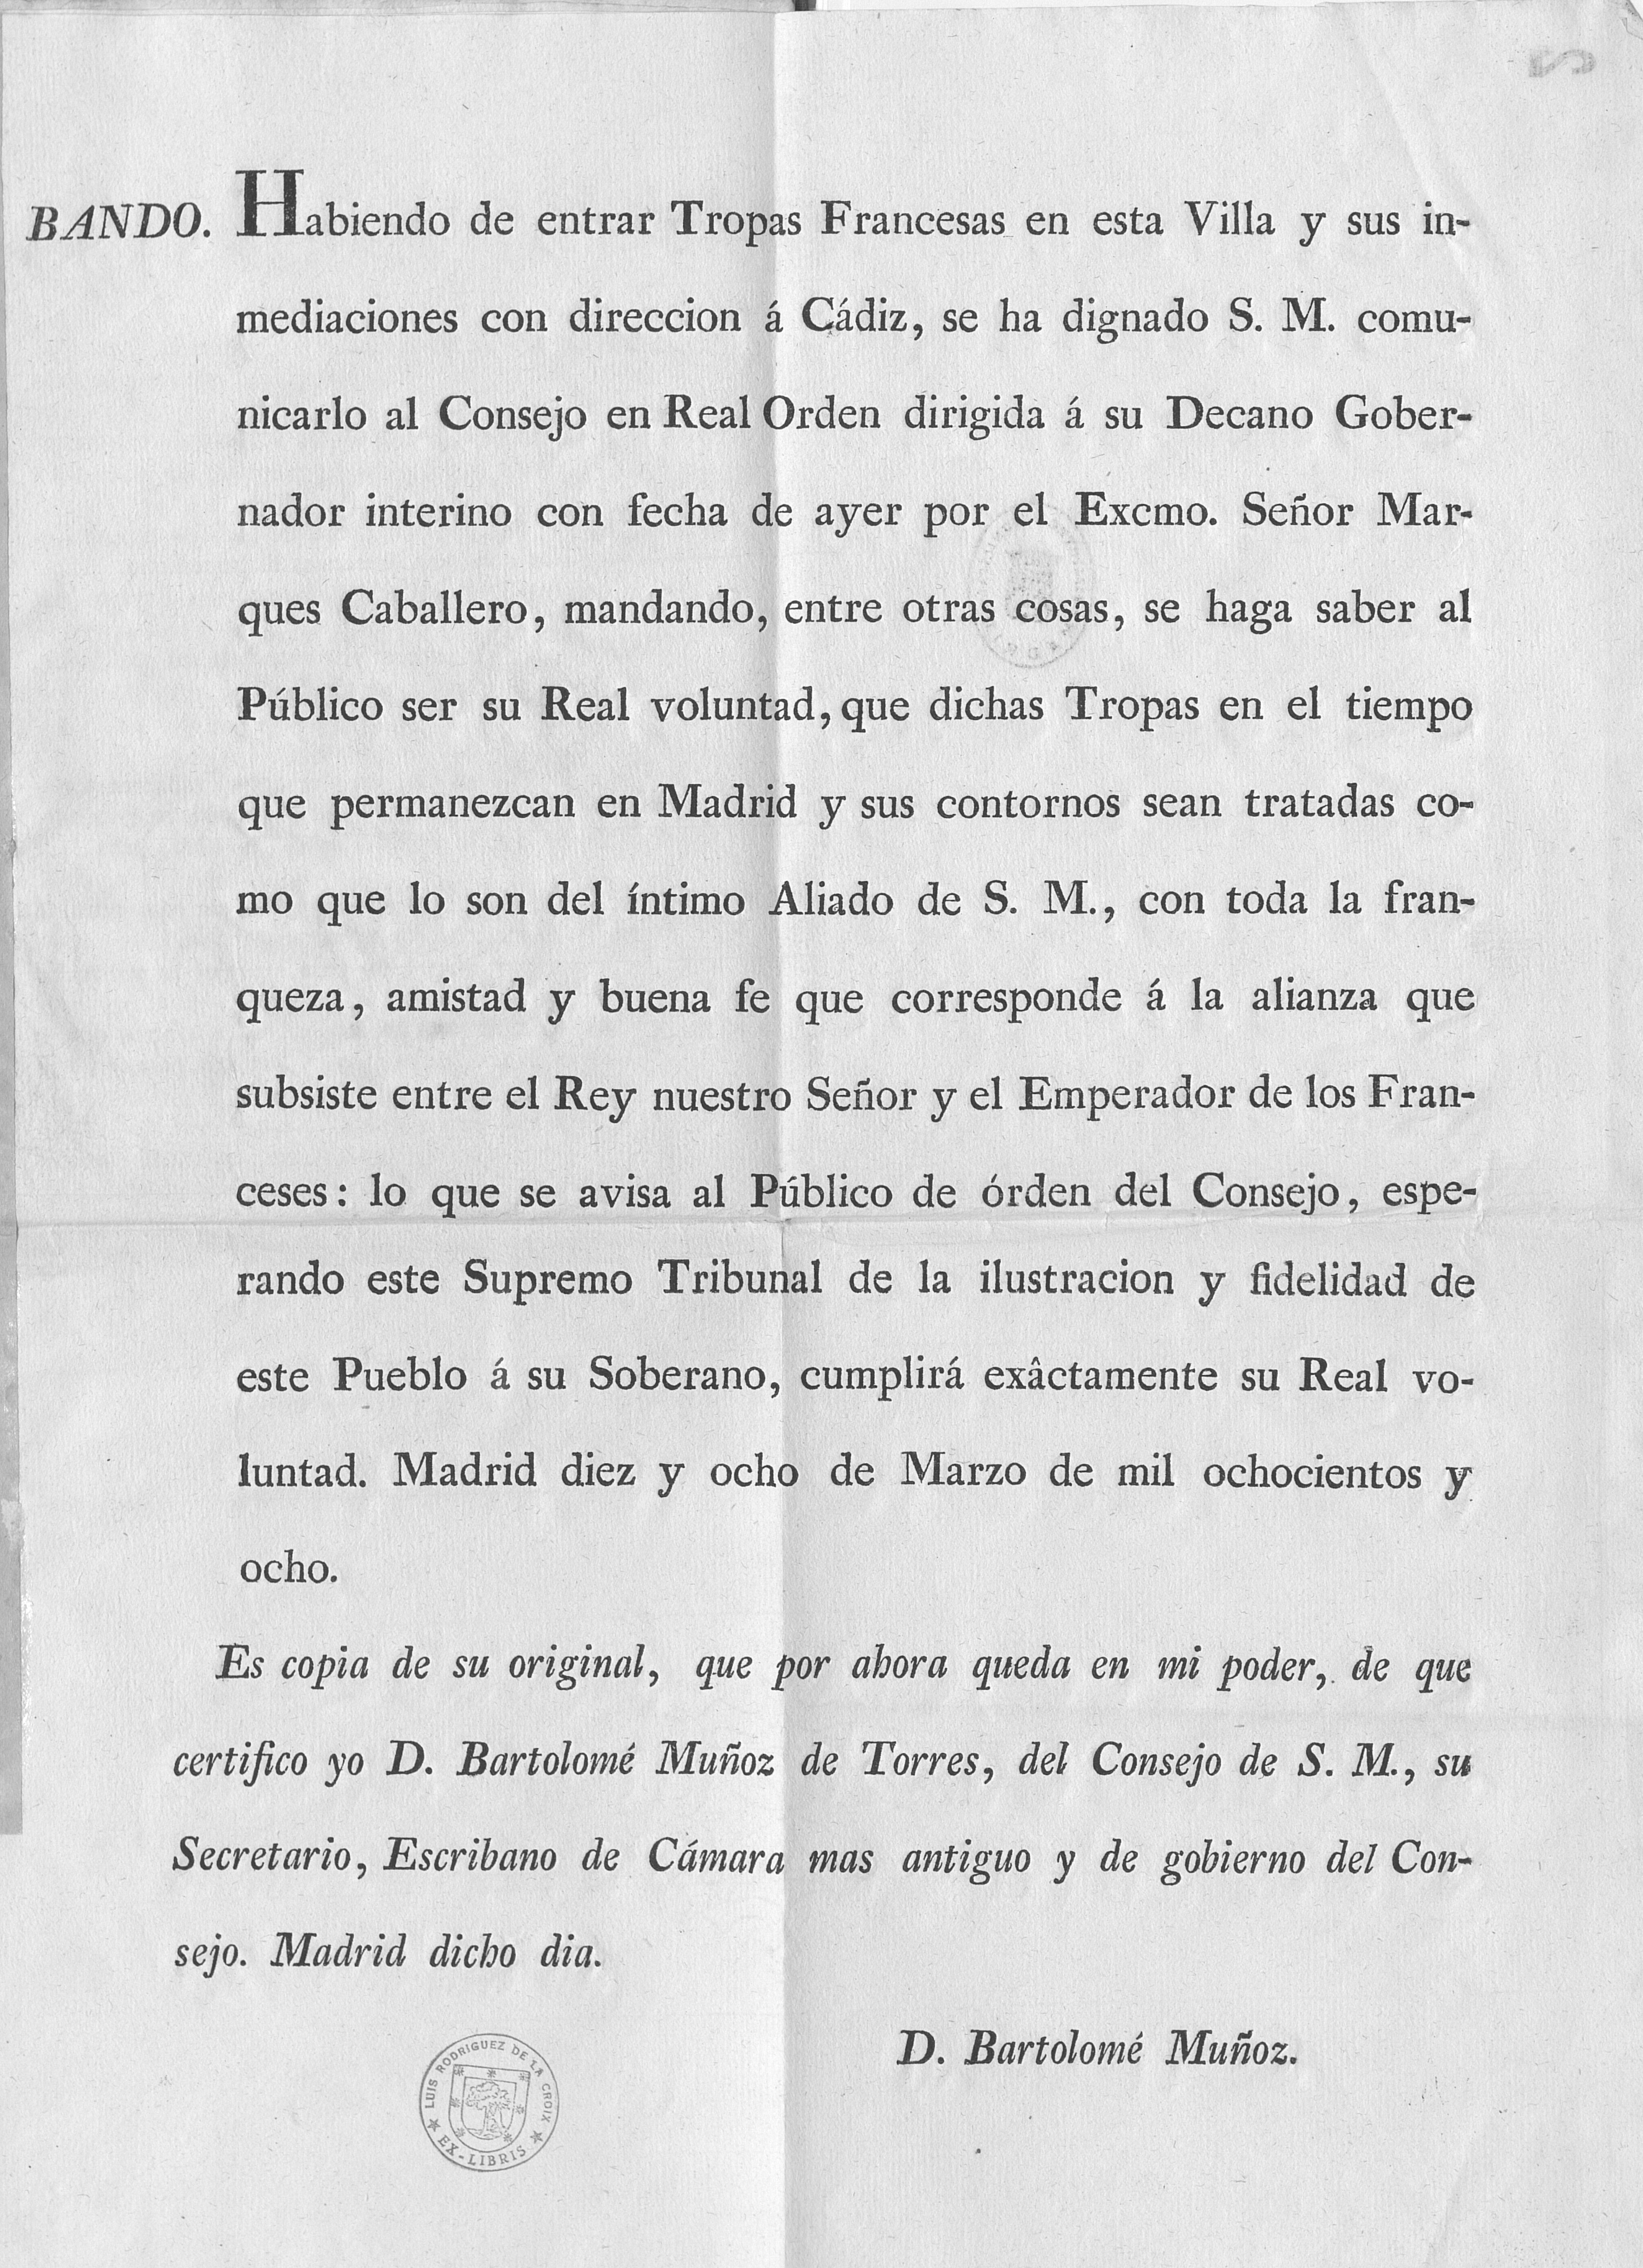 Bando. Habiendo de entrar Tropas Francesas en esta Villa y sus inmediaciones con dirección a Cádiz [...]